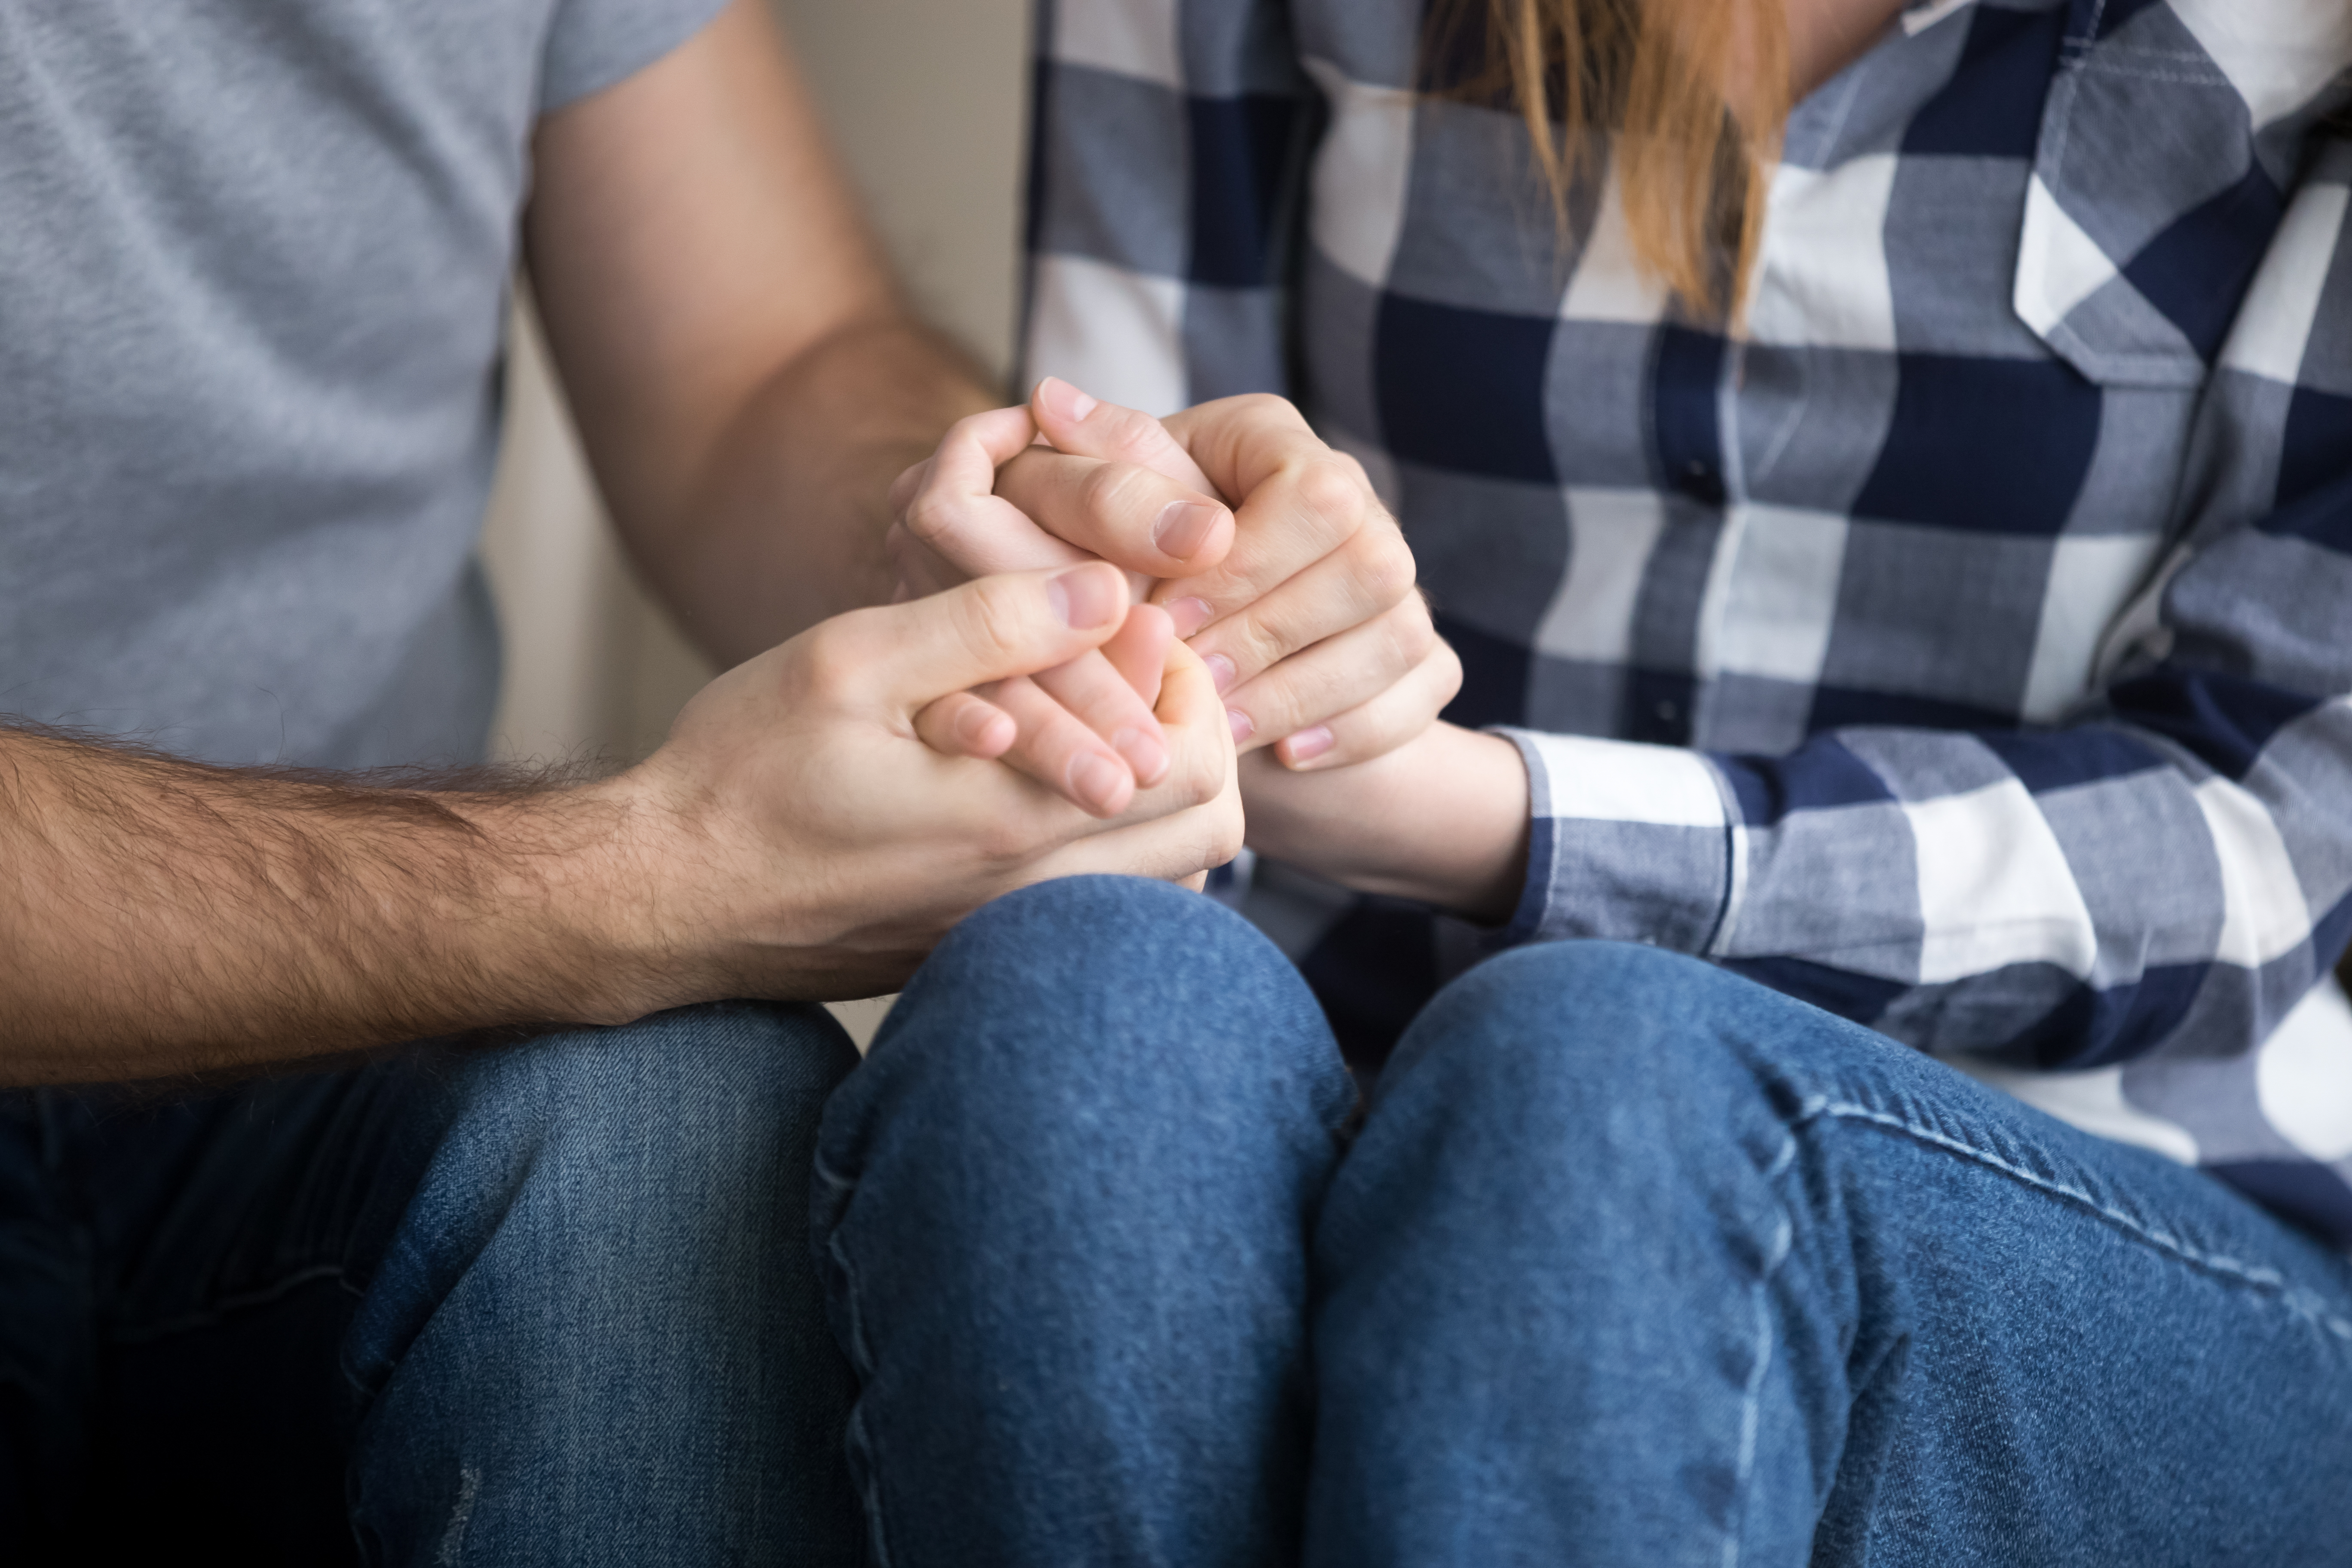 Ein verheiratetes Paar hält sich an den Händen und gibt sich psychologischen Beistand, Nahaufnahme | Quelle: Getty Images